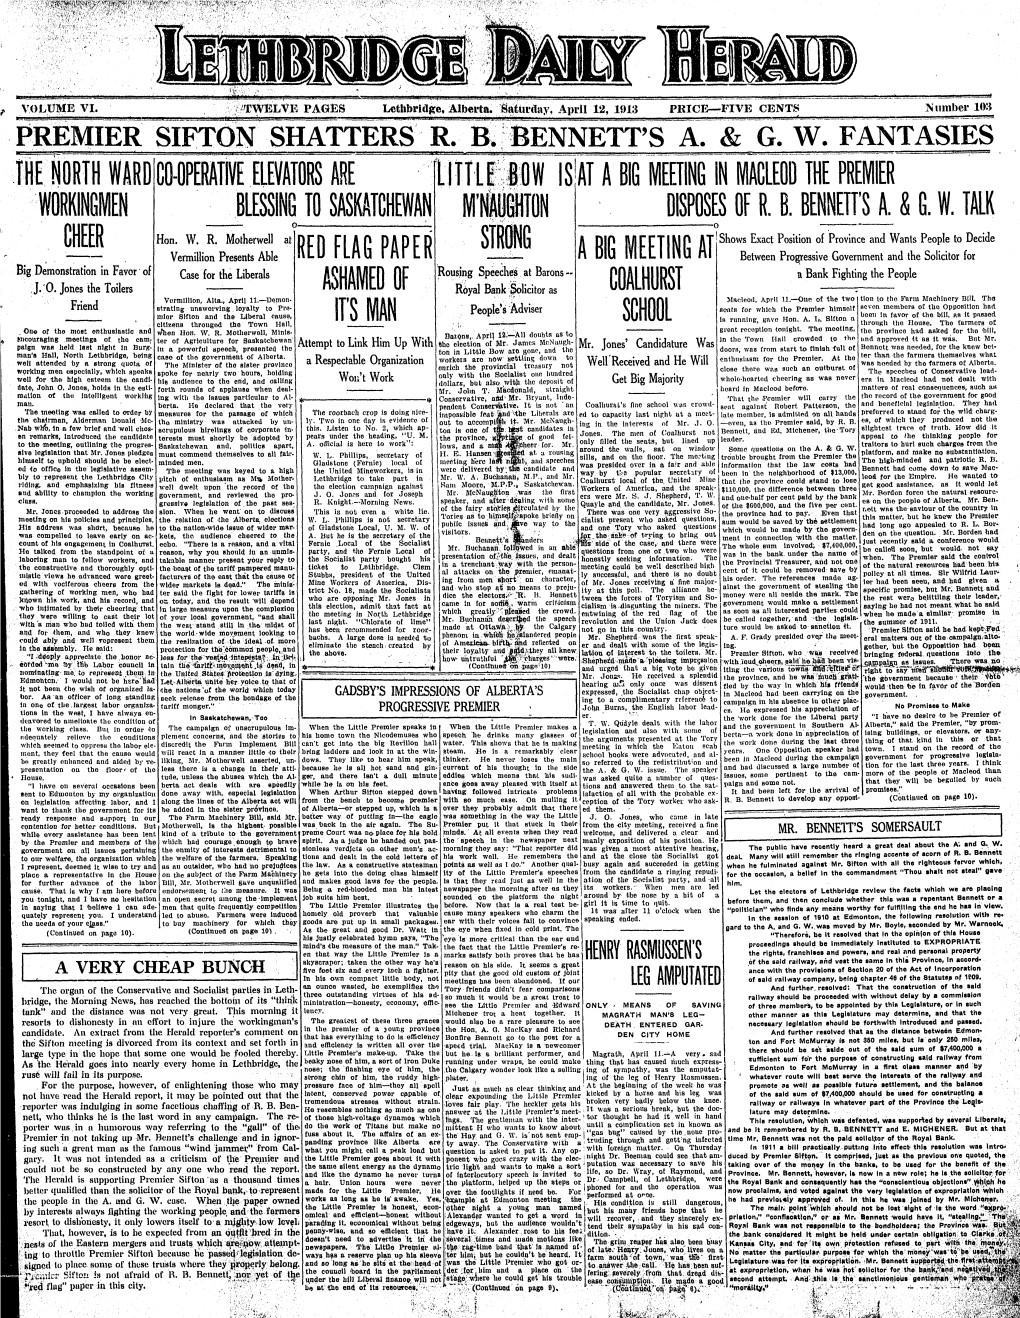 Lcthbrid^E, Albcsi'ta. Satuiday, April 12, 1913 N Umbel